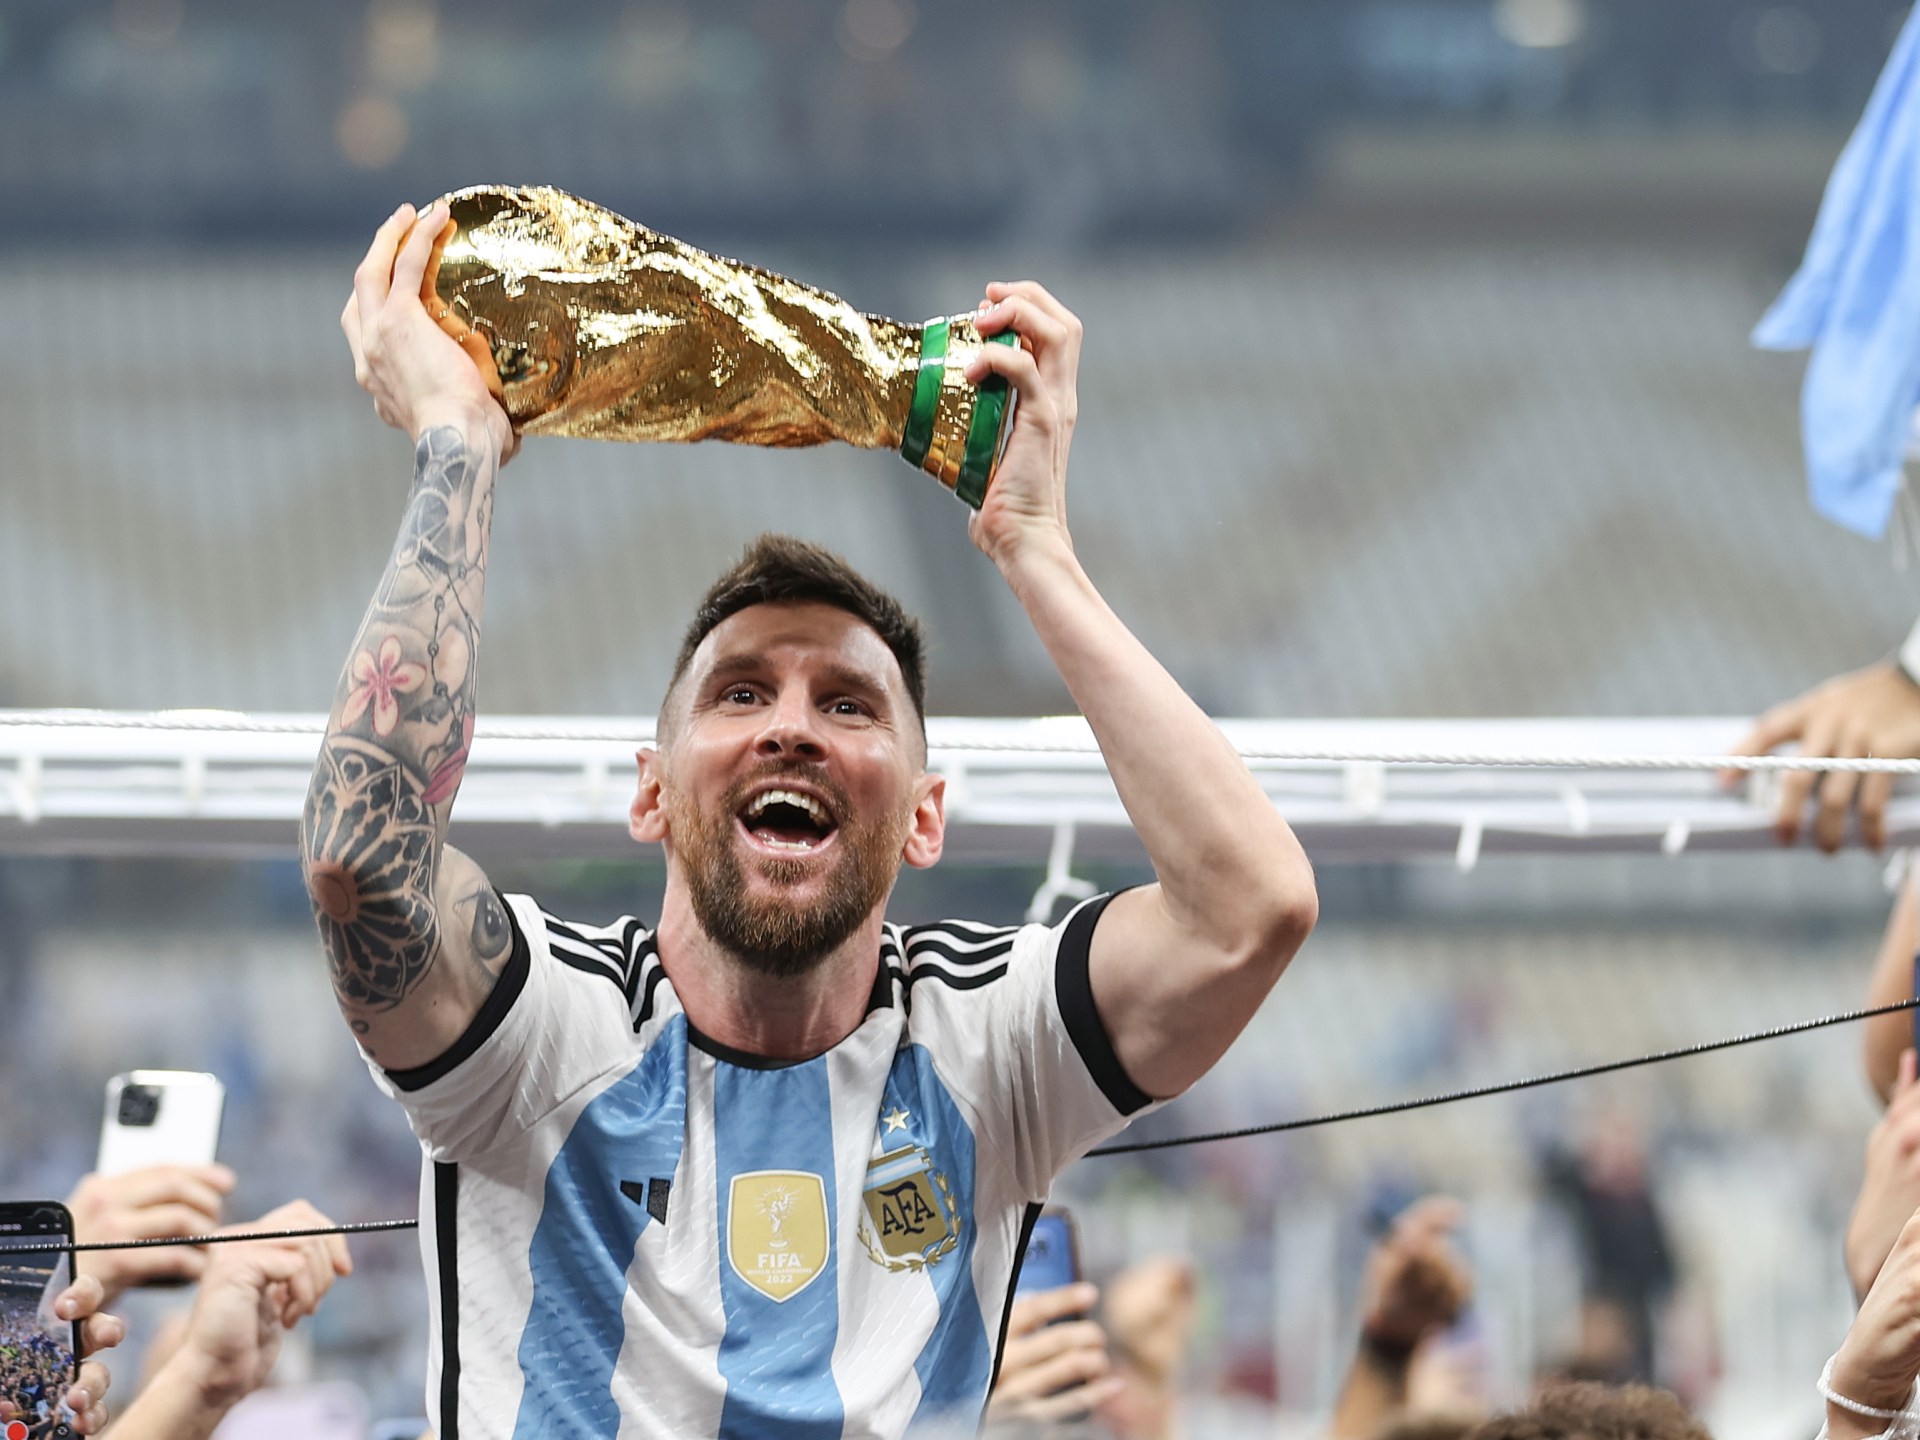 Pria bersenjata menembak di toko keluarga Messi di Argentina, pemain mengancam |  Berita Sepak Bola